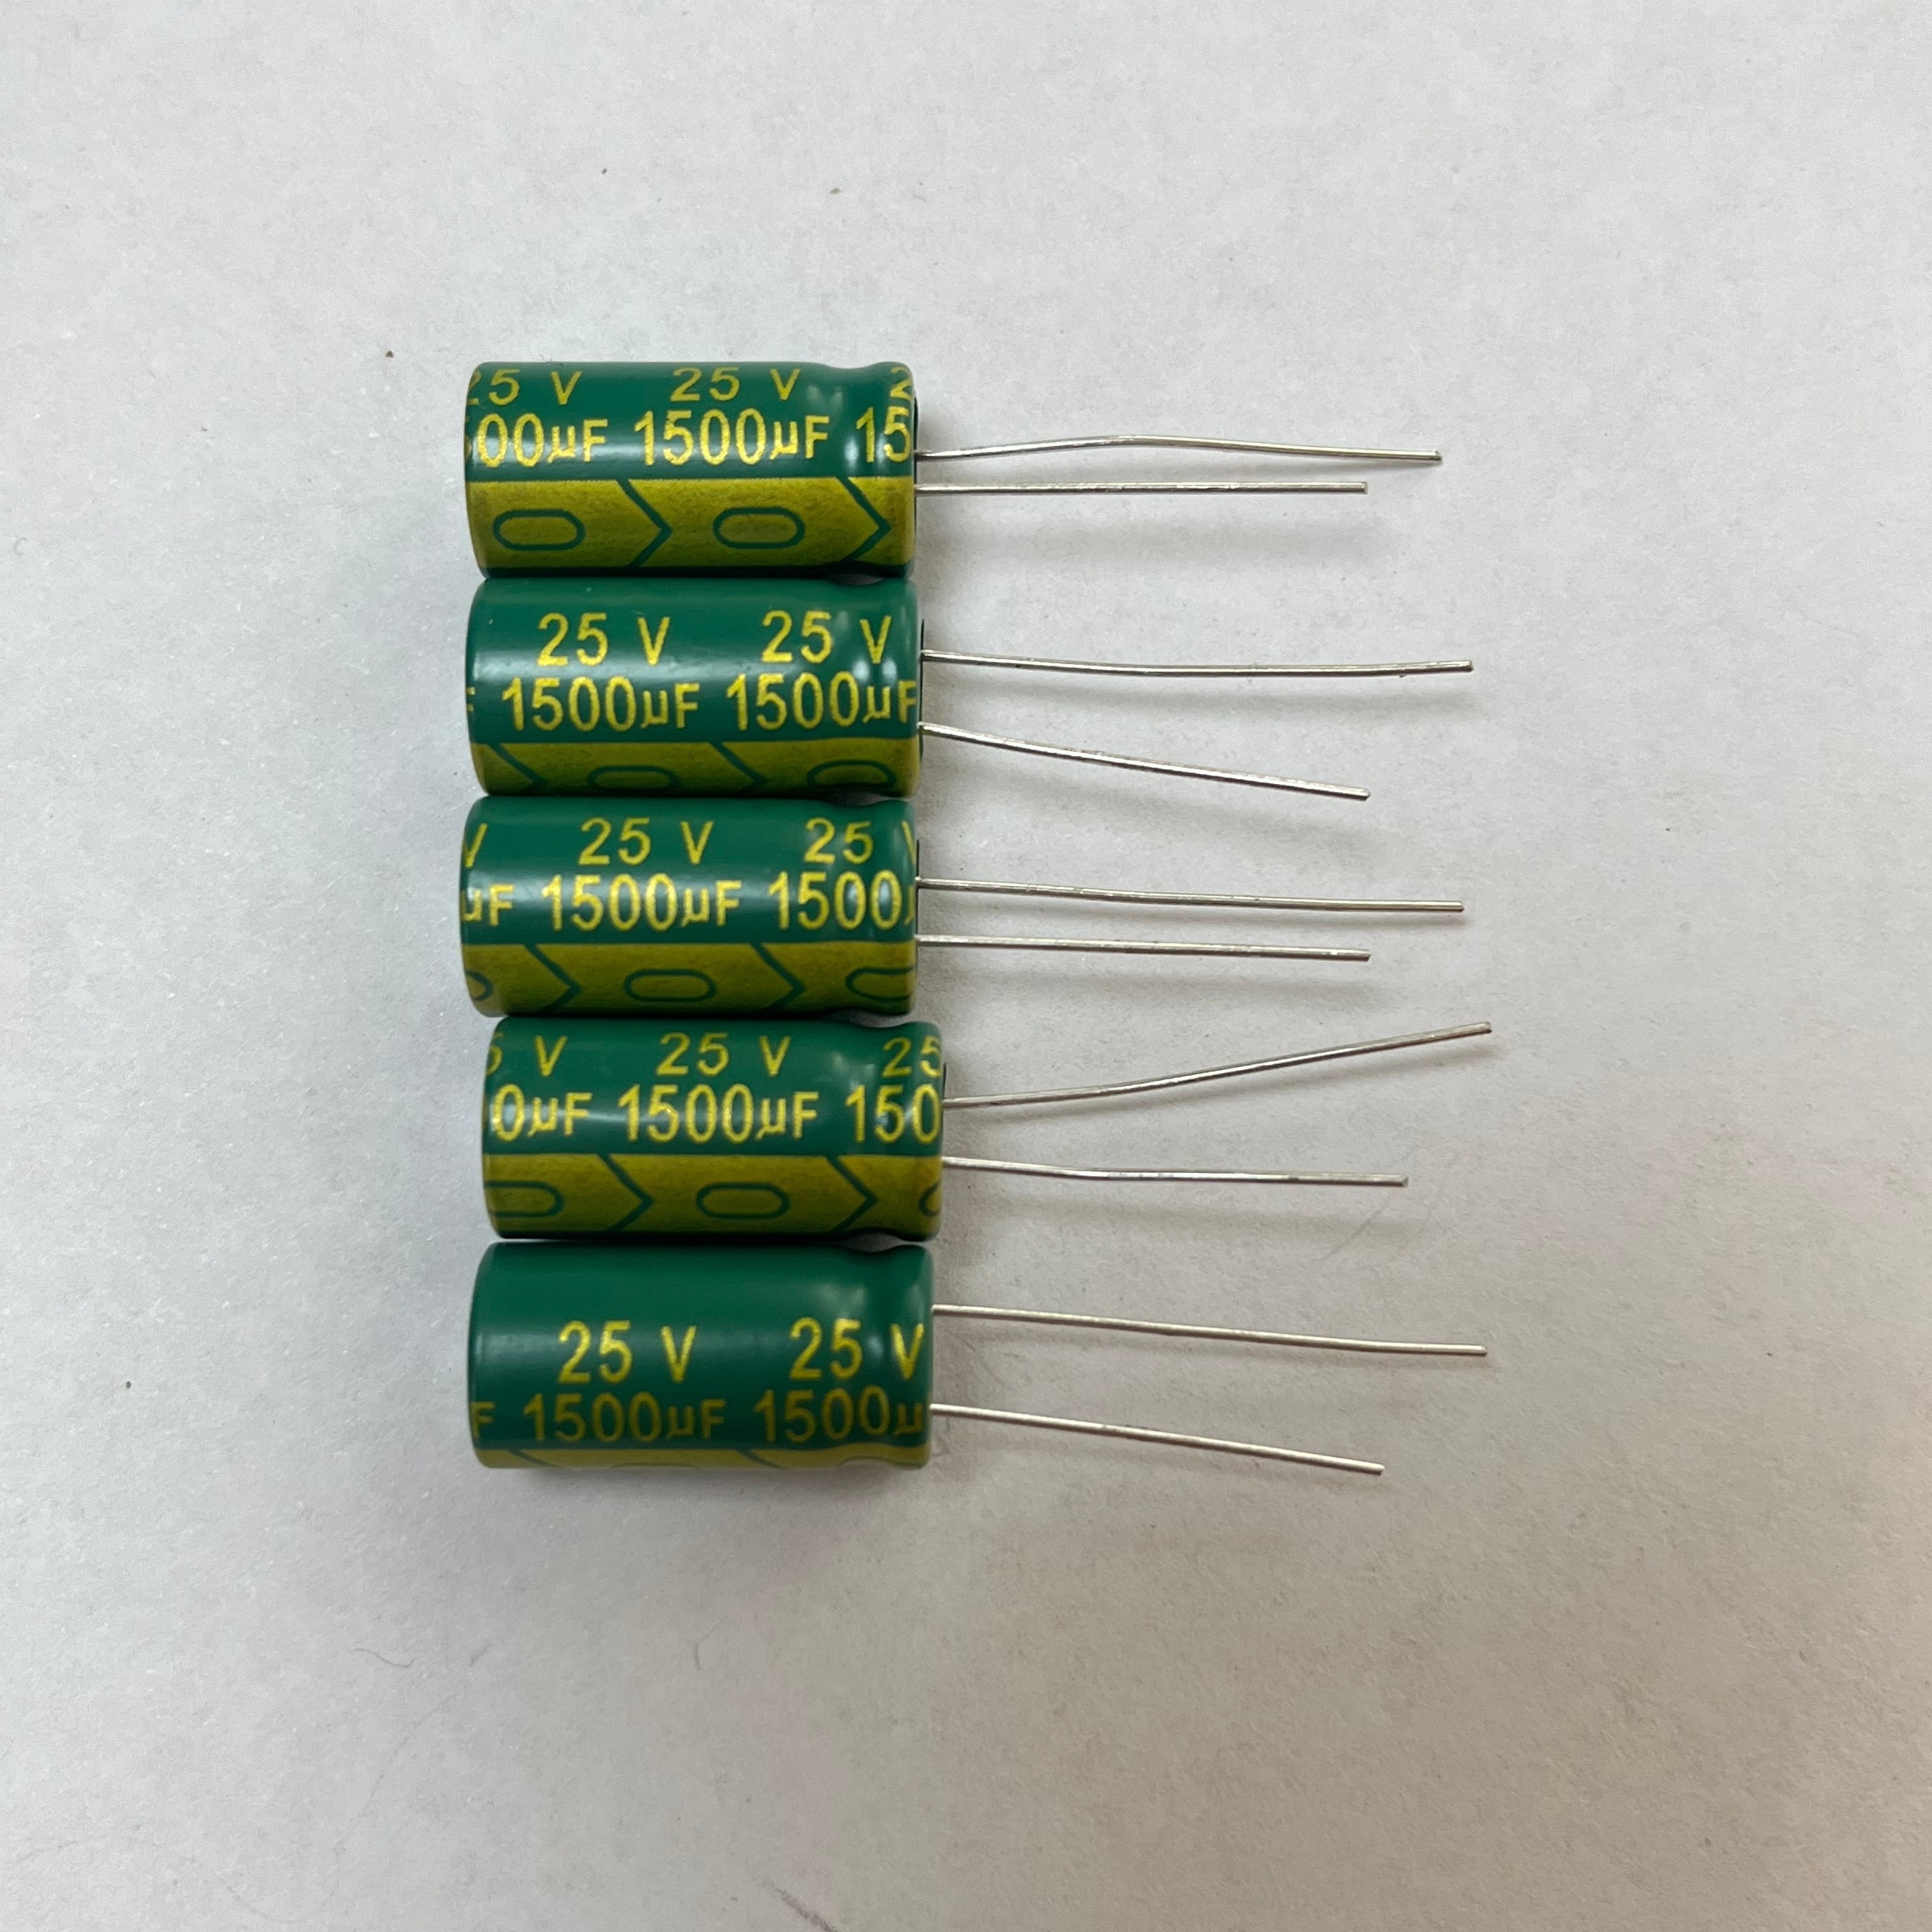 Condensadores Electrolíticos – Cabeza Cuadrada